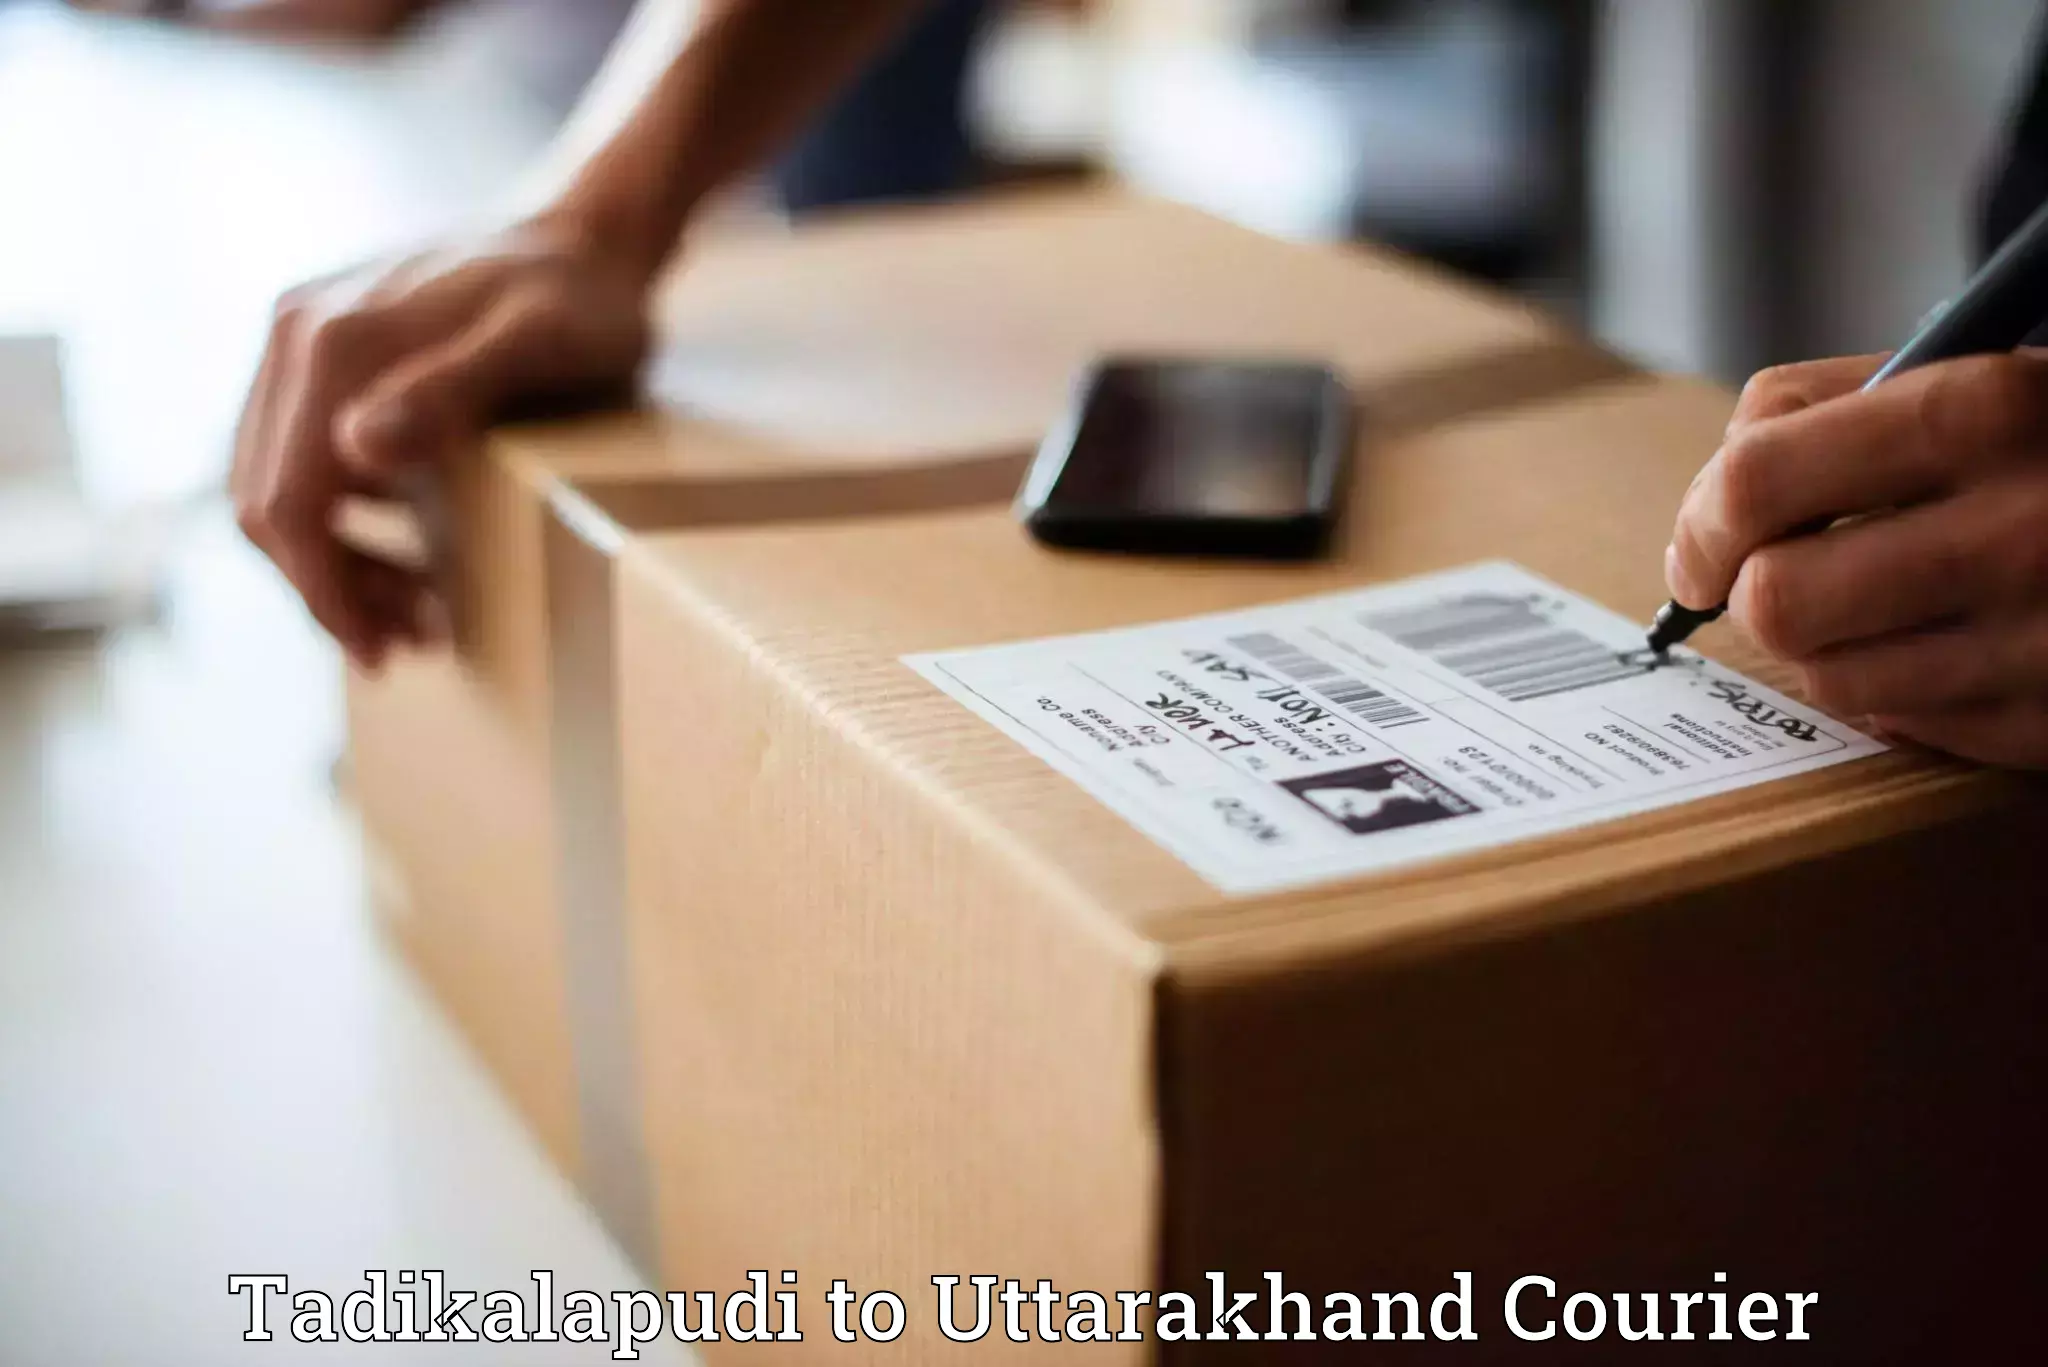 Rapid shipping services Tadikalapudi to Uttarakhand